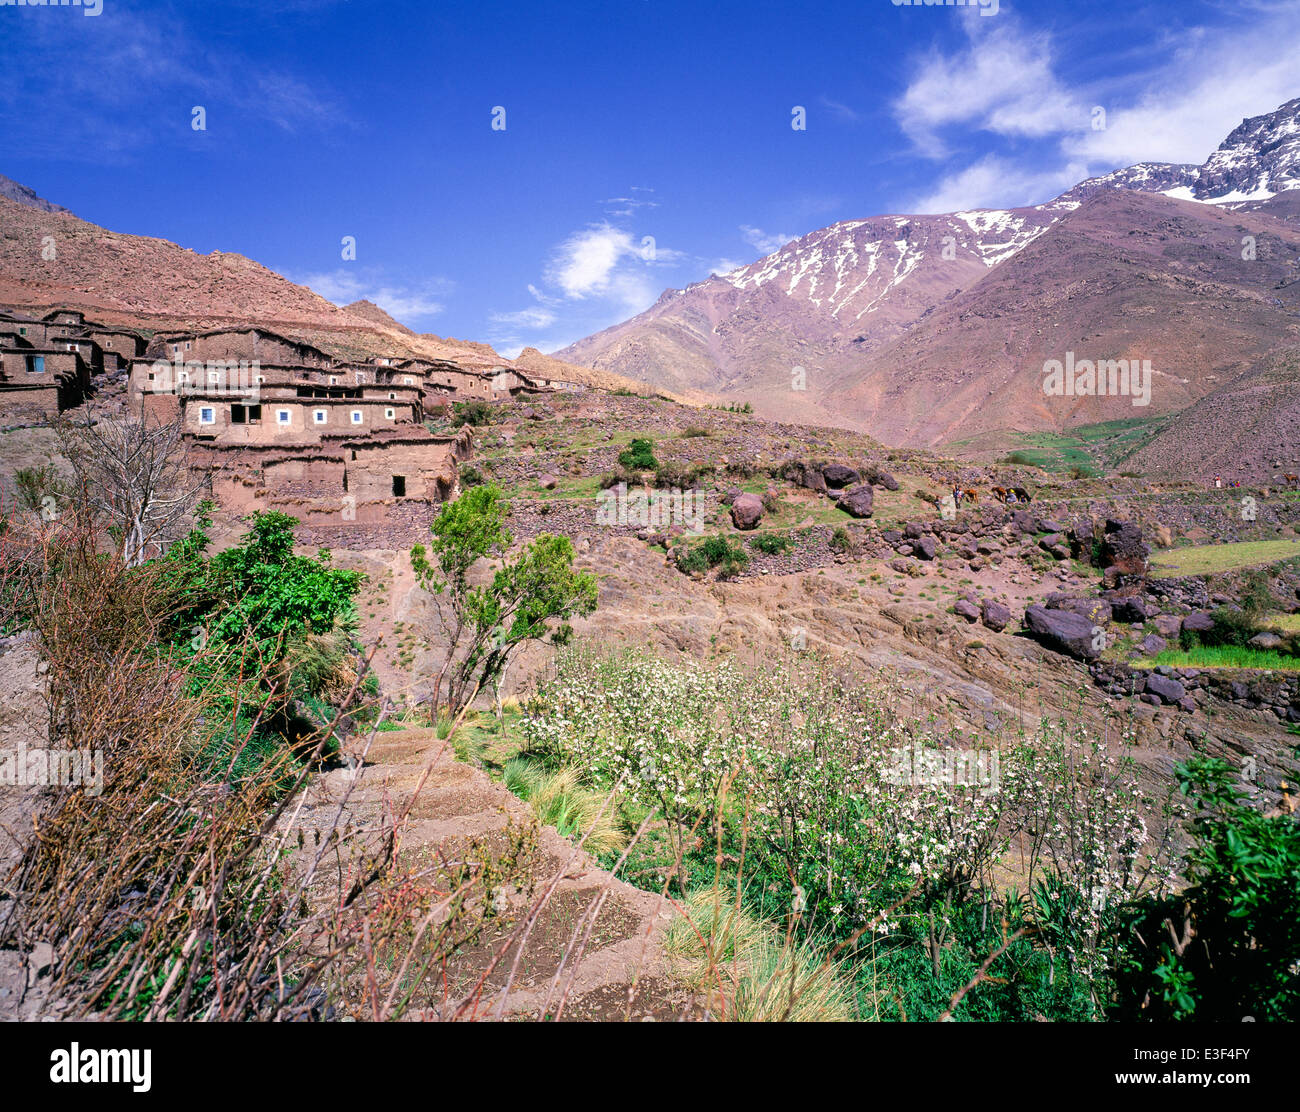 Tacheddirt village High Atlas mountains Morocco Stock Photo